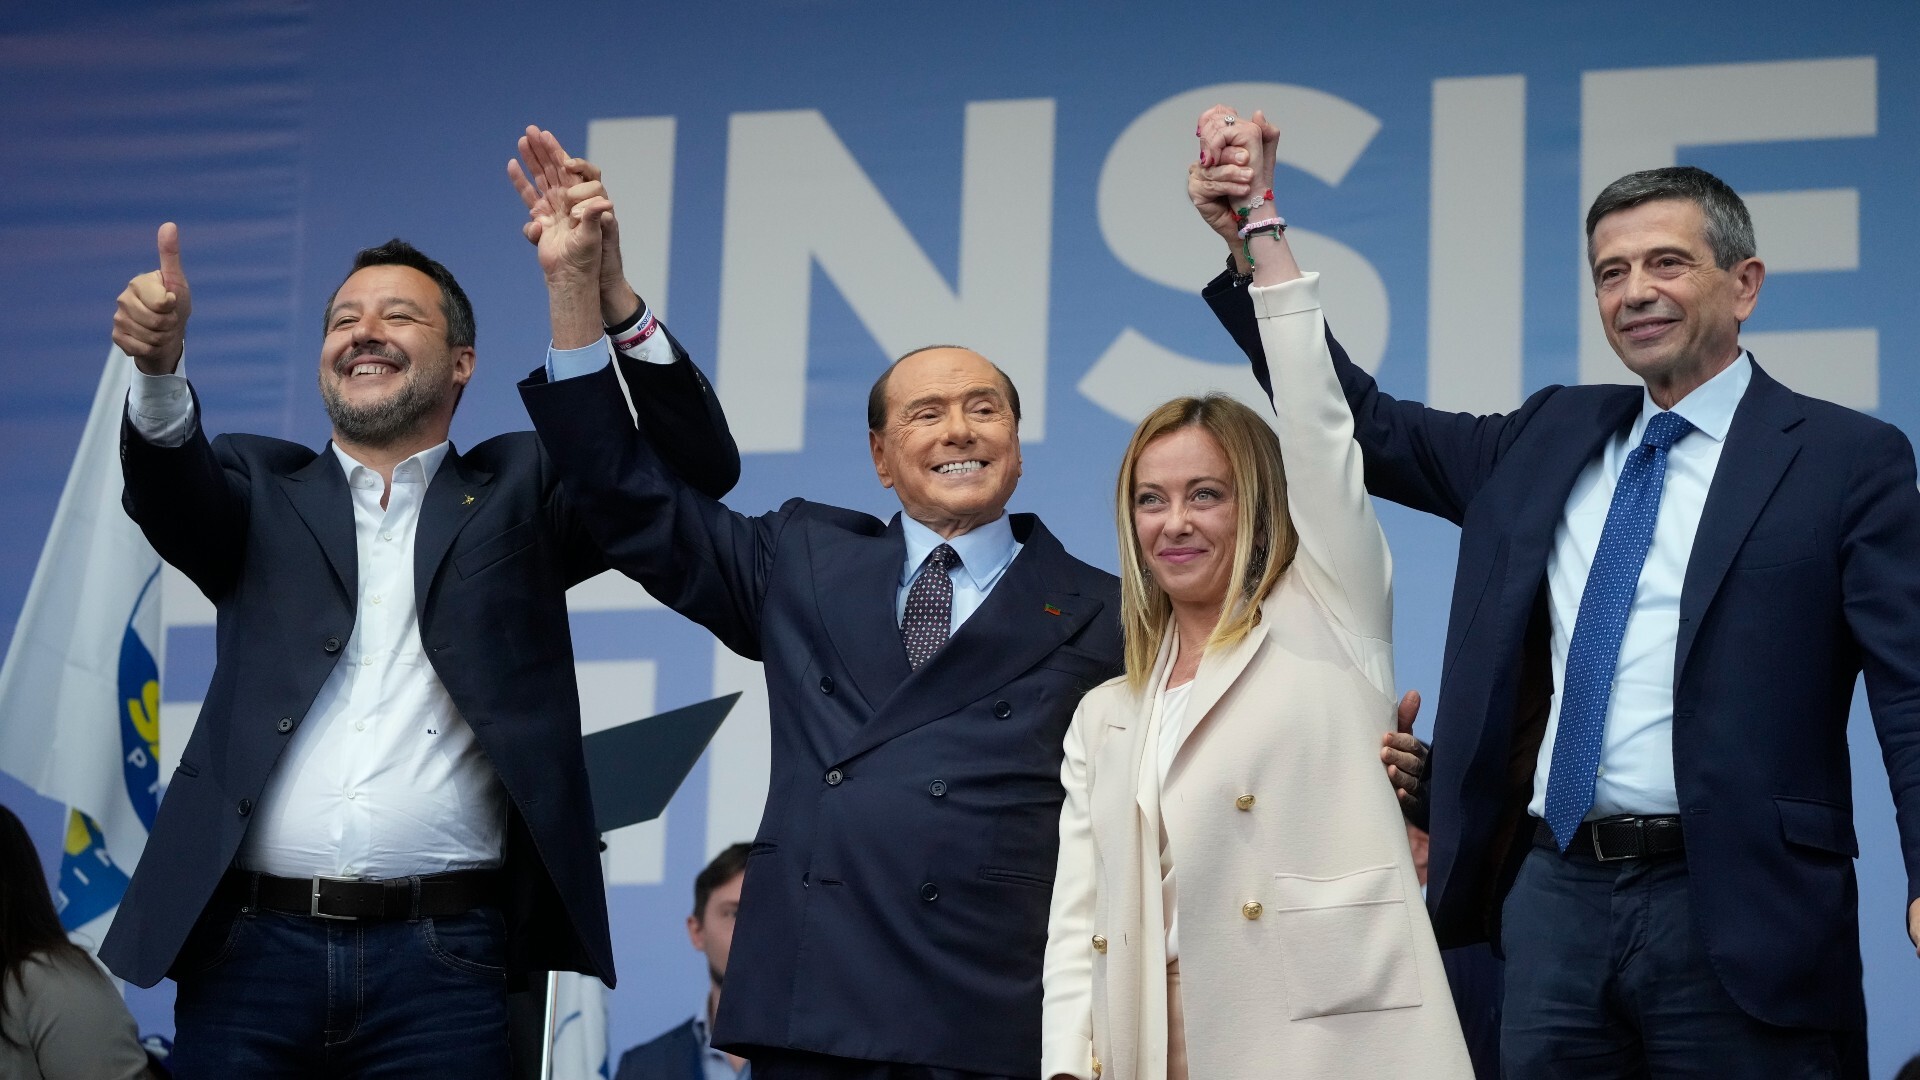 Elezioni in Italia |  Bruxelles guarda con preoccupazione alla possibile vittoria dell’estrema destra in Italia: ‘L’Europa ha finito il divertimento’